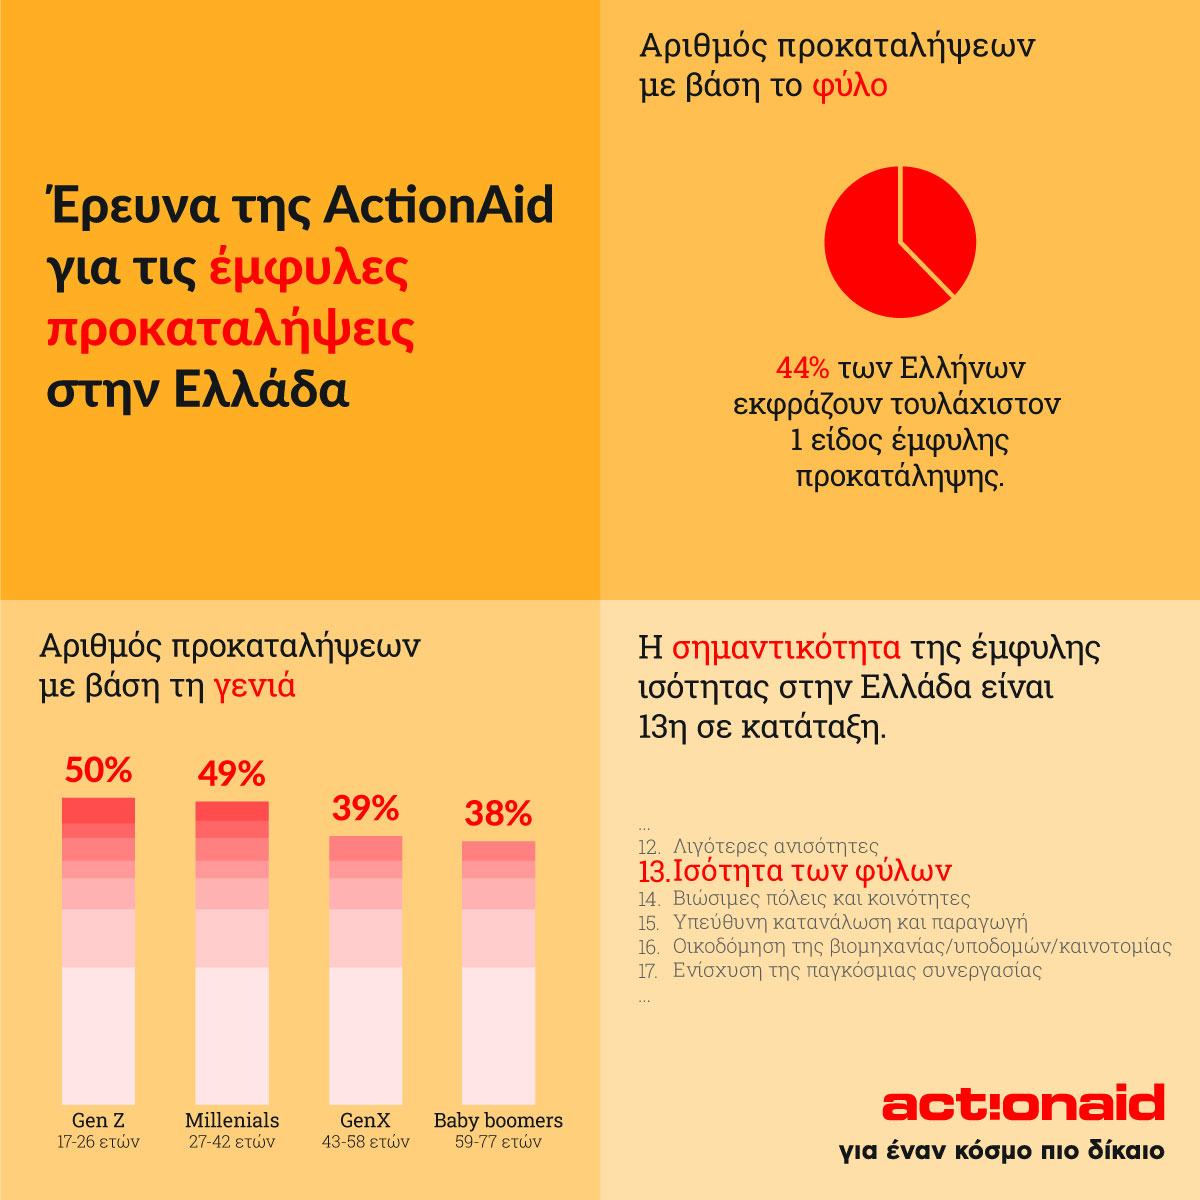 Έκθεση ActionAid για Έμφυλες Προκαταλήψεις